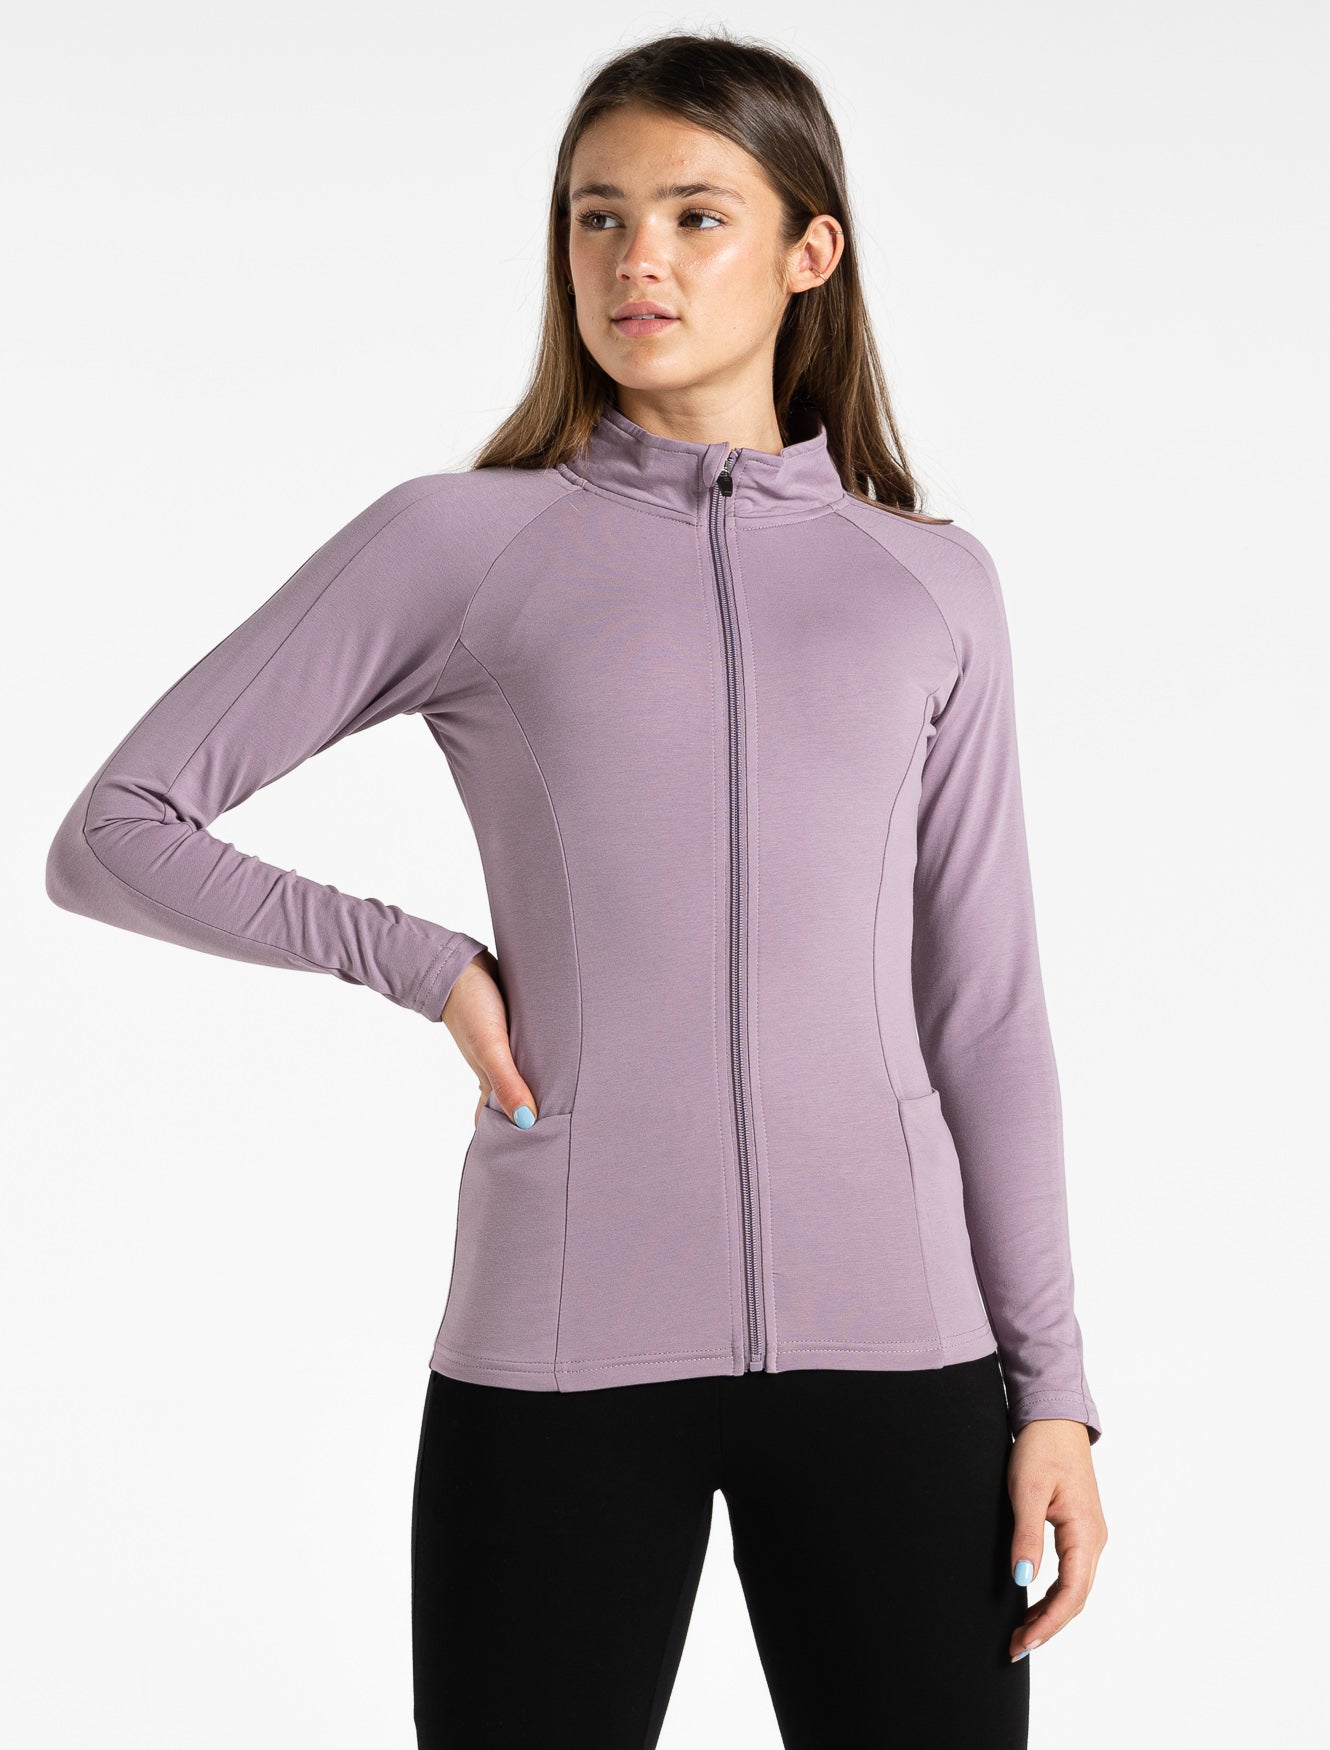 ProFit Jacket 003 / Lavender Pursue Fitness 1